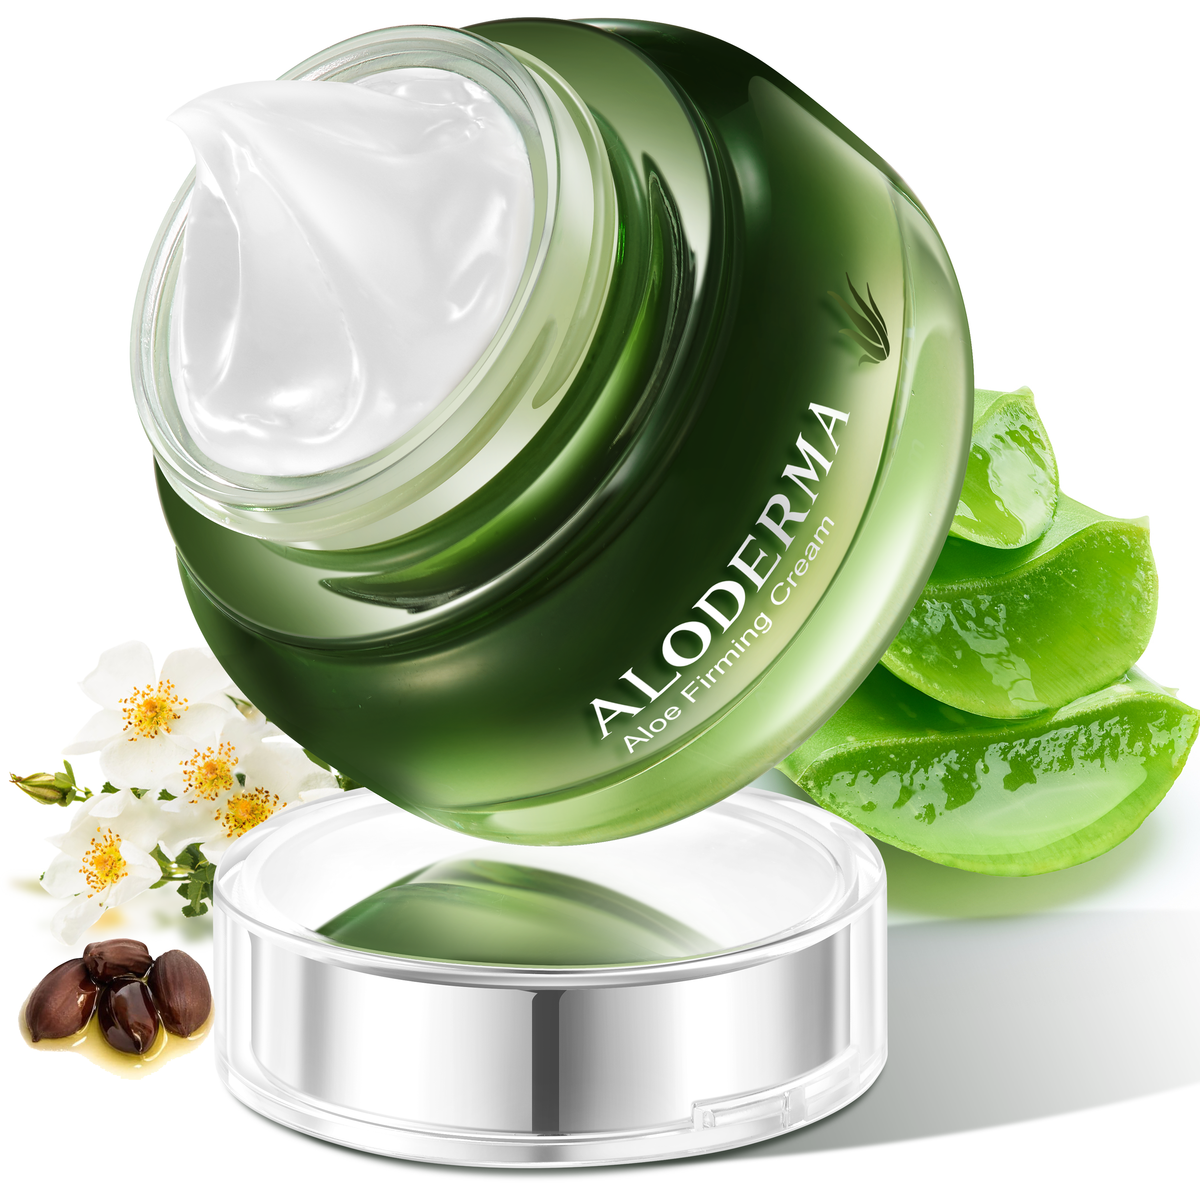 Aloe Firming &amp; Rejuvenating Cream